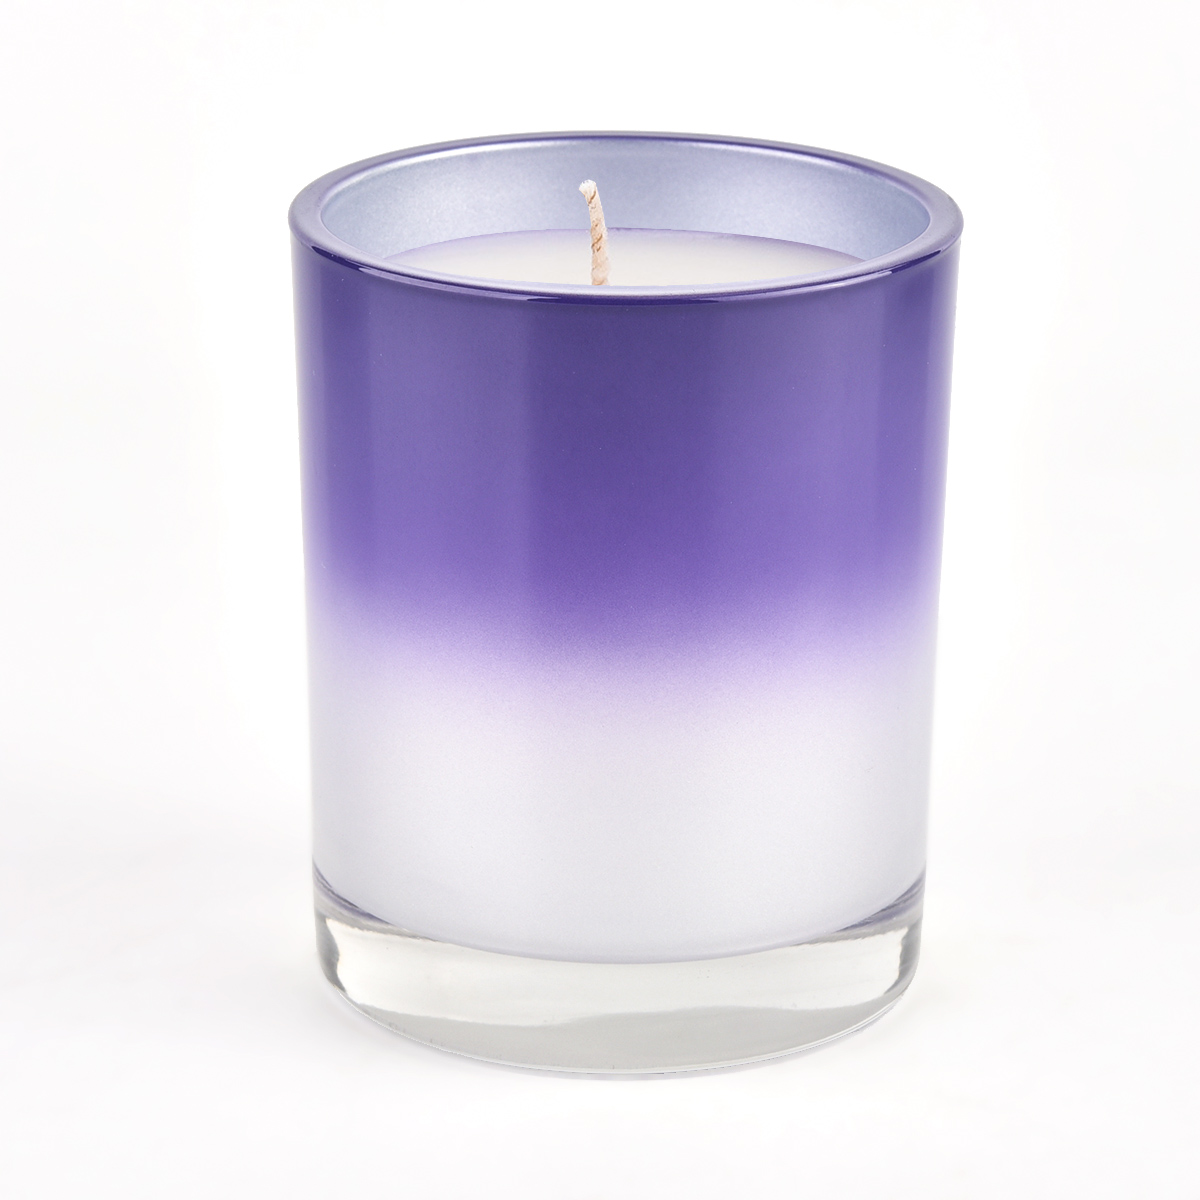 Toples lilin kaca glossy desain baru dengan pemasok ungu gradien